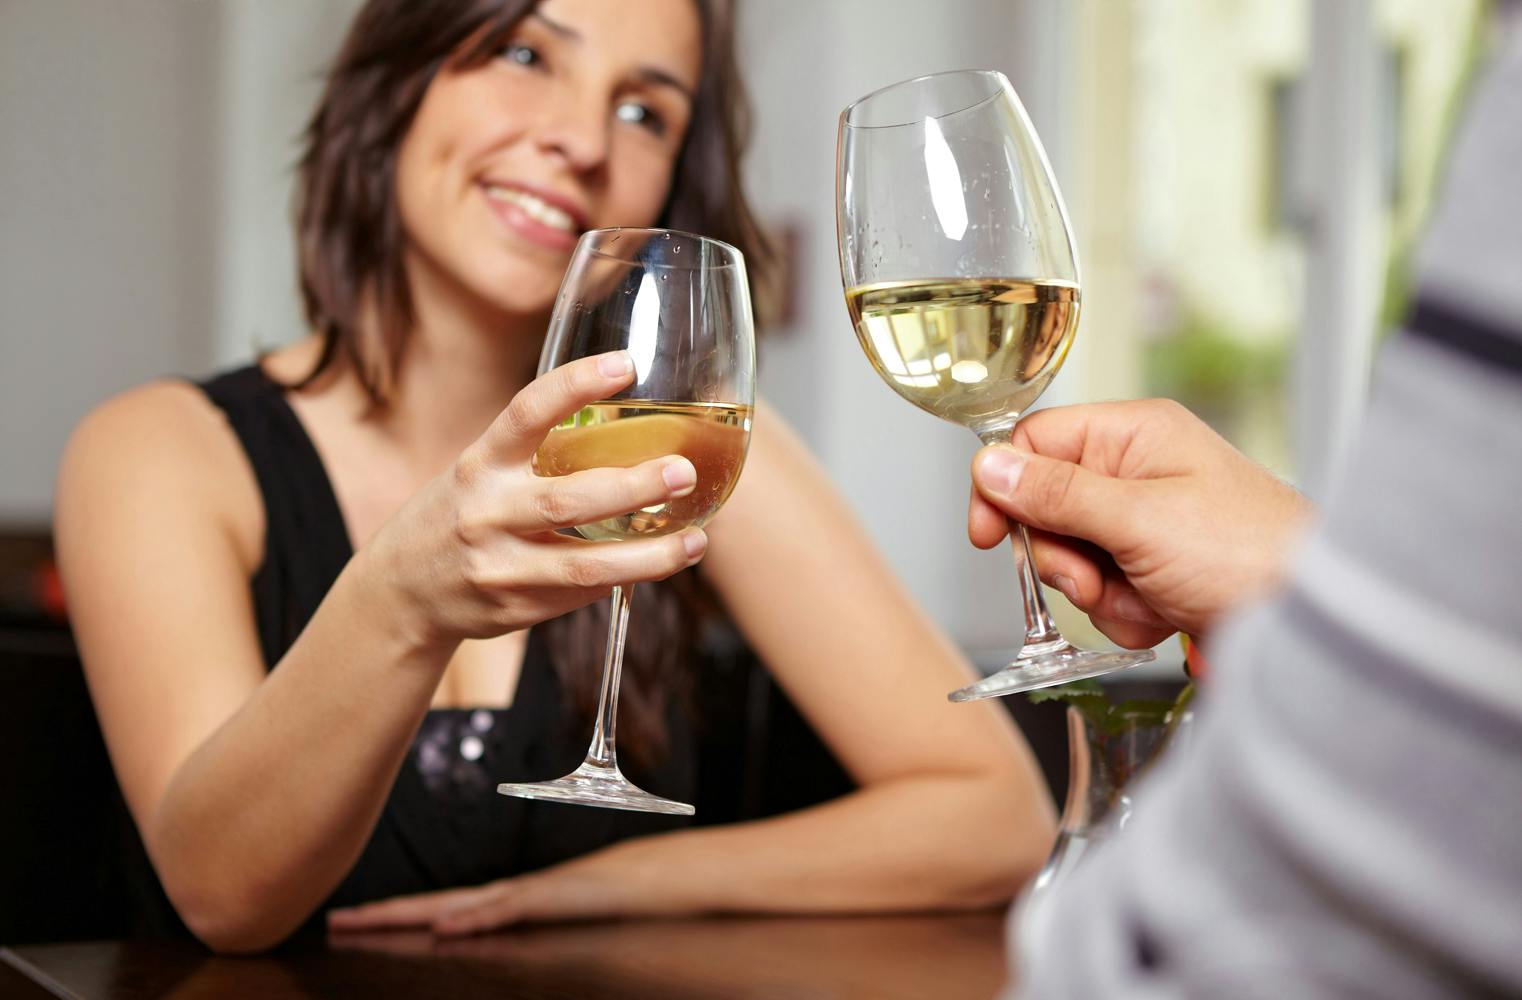 Romantikwochenende am Weingut | Dinner im Weinkeller | 1 ÜN 